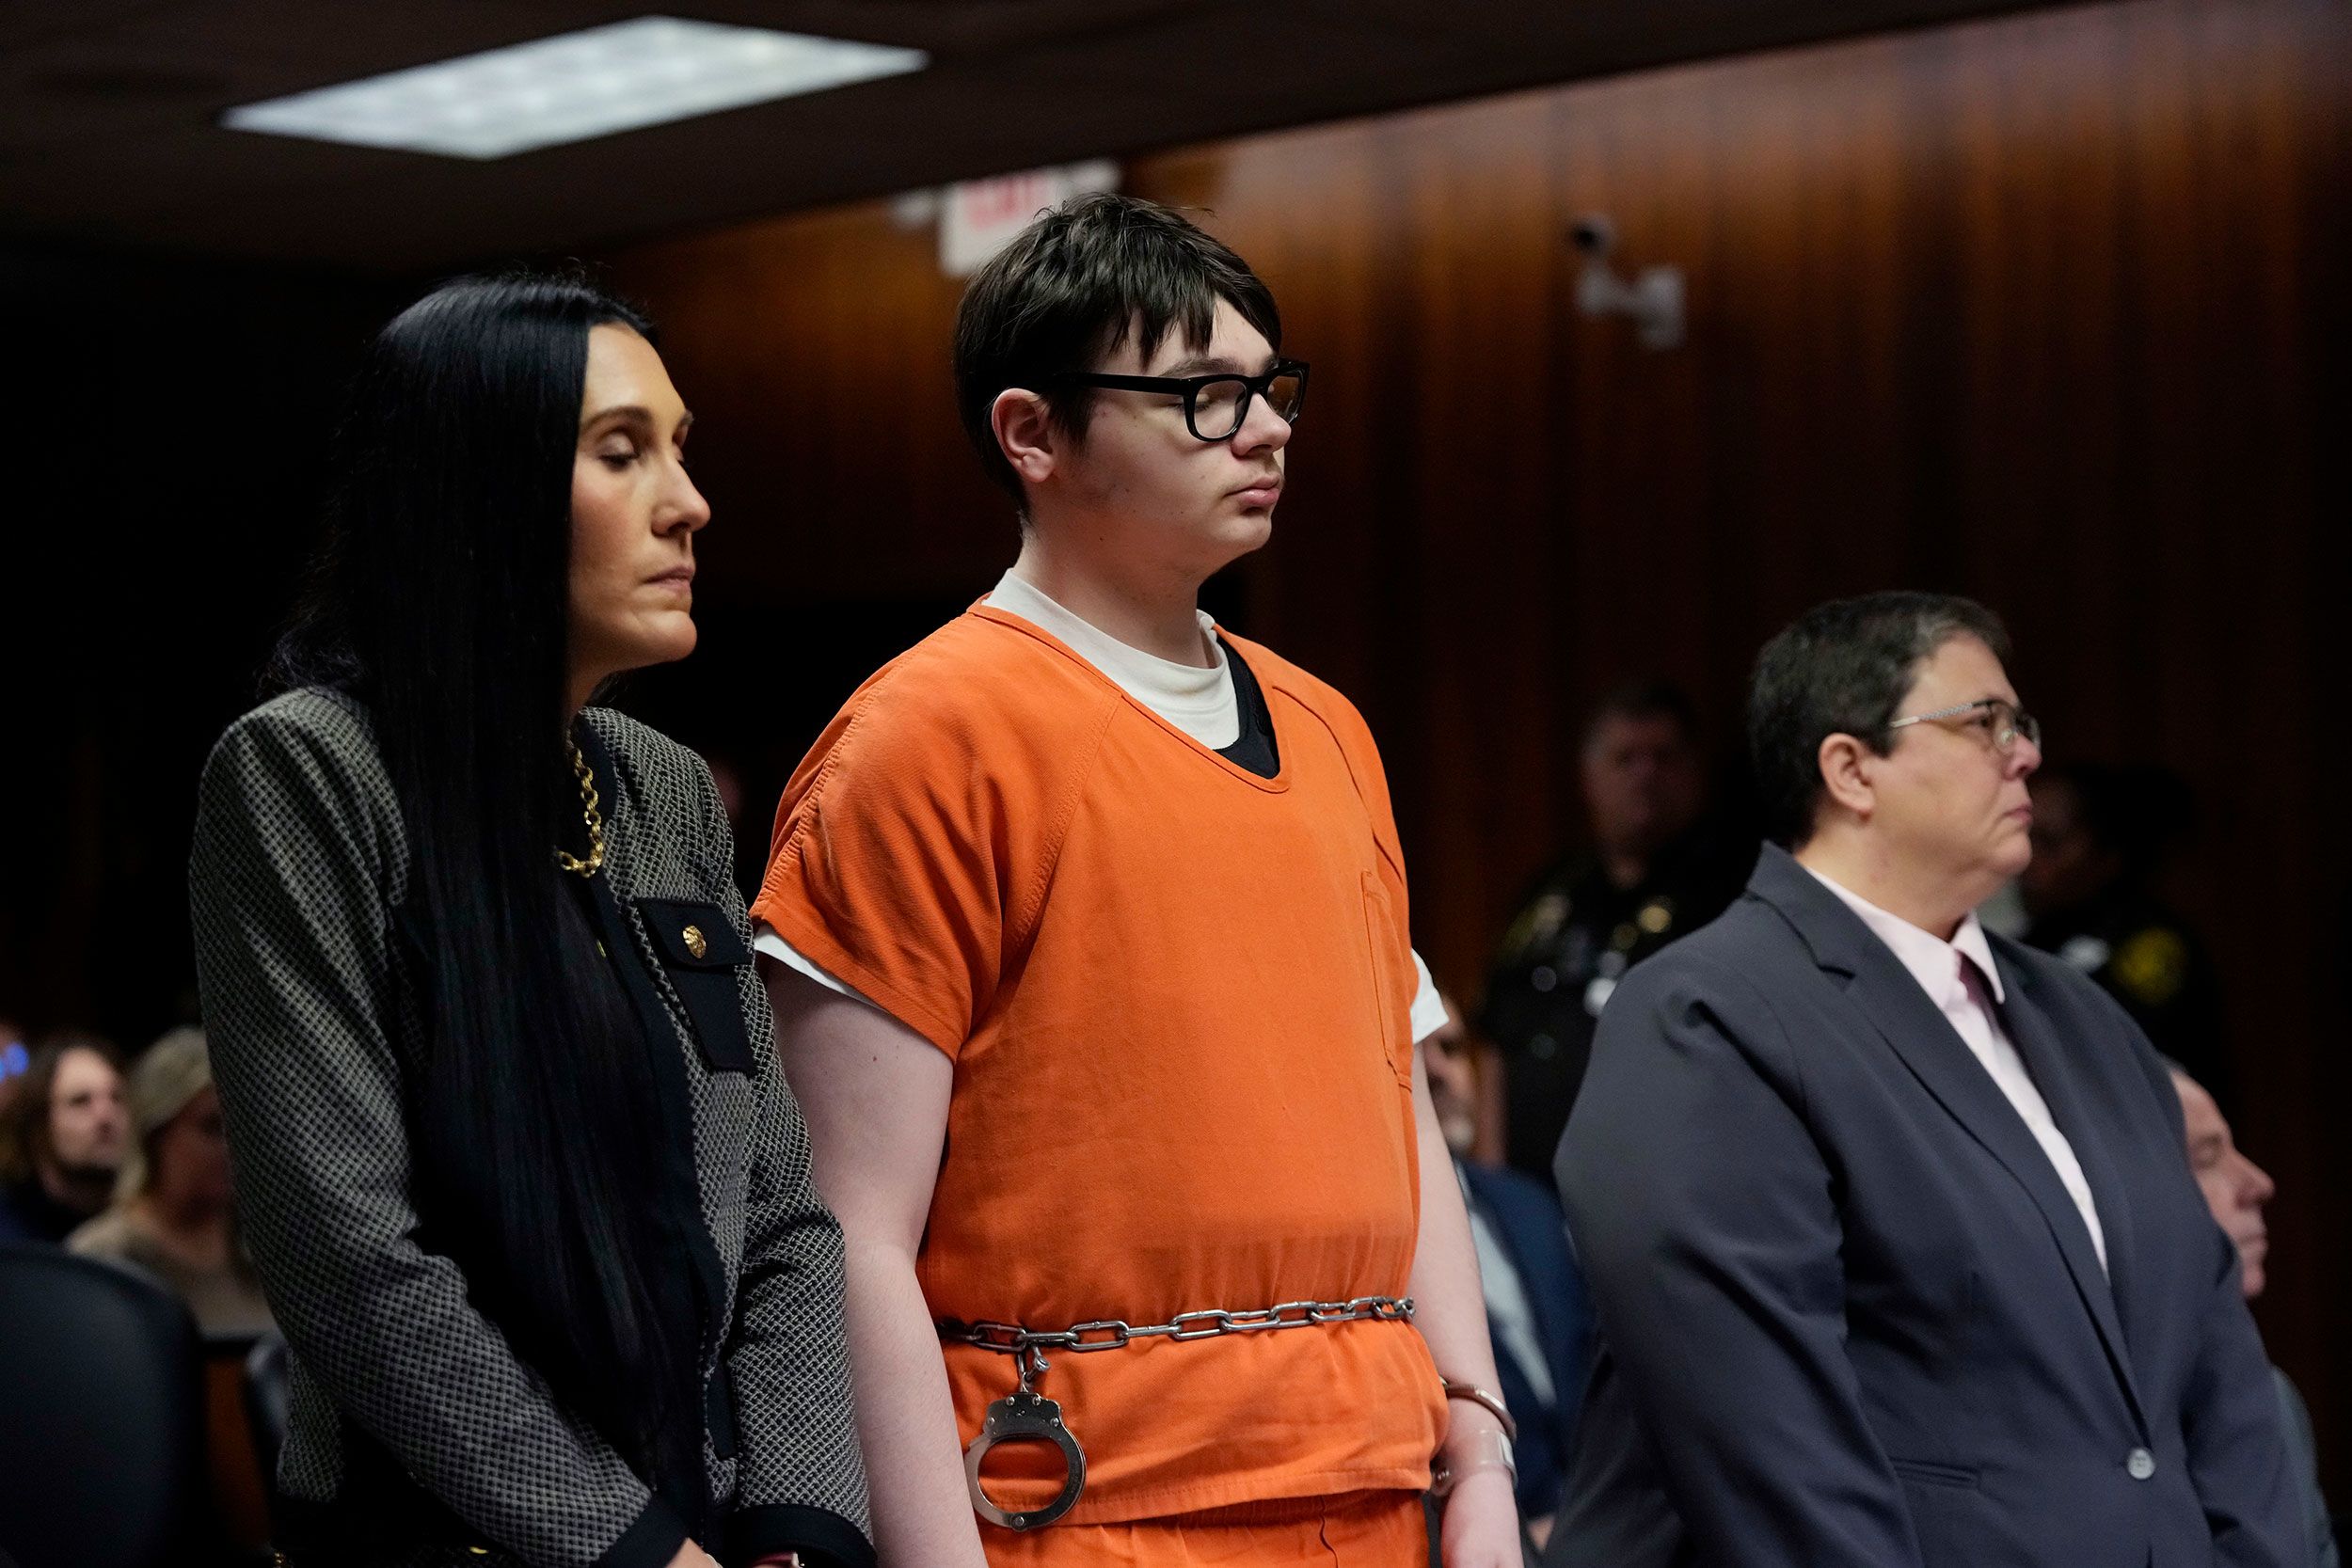 Condannato per omicidio colposo il padre del ragazzo che fece una strage in un liceo del Michigan